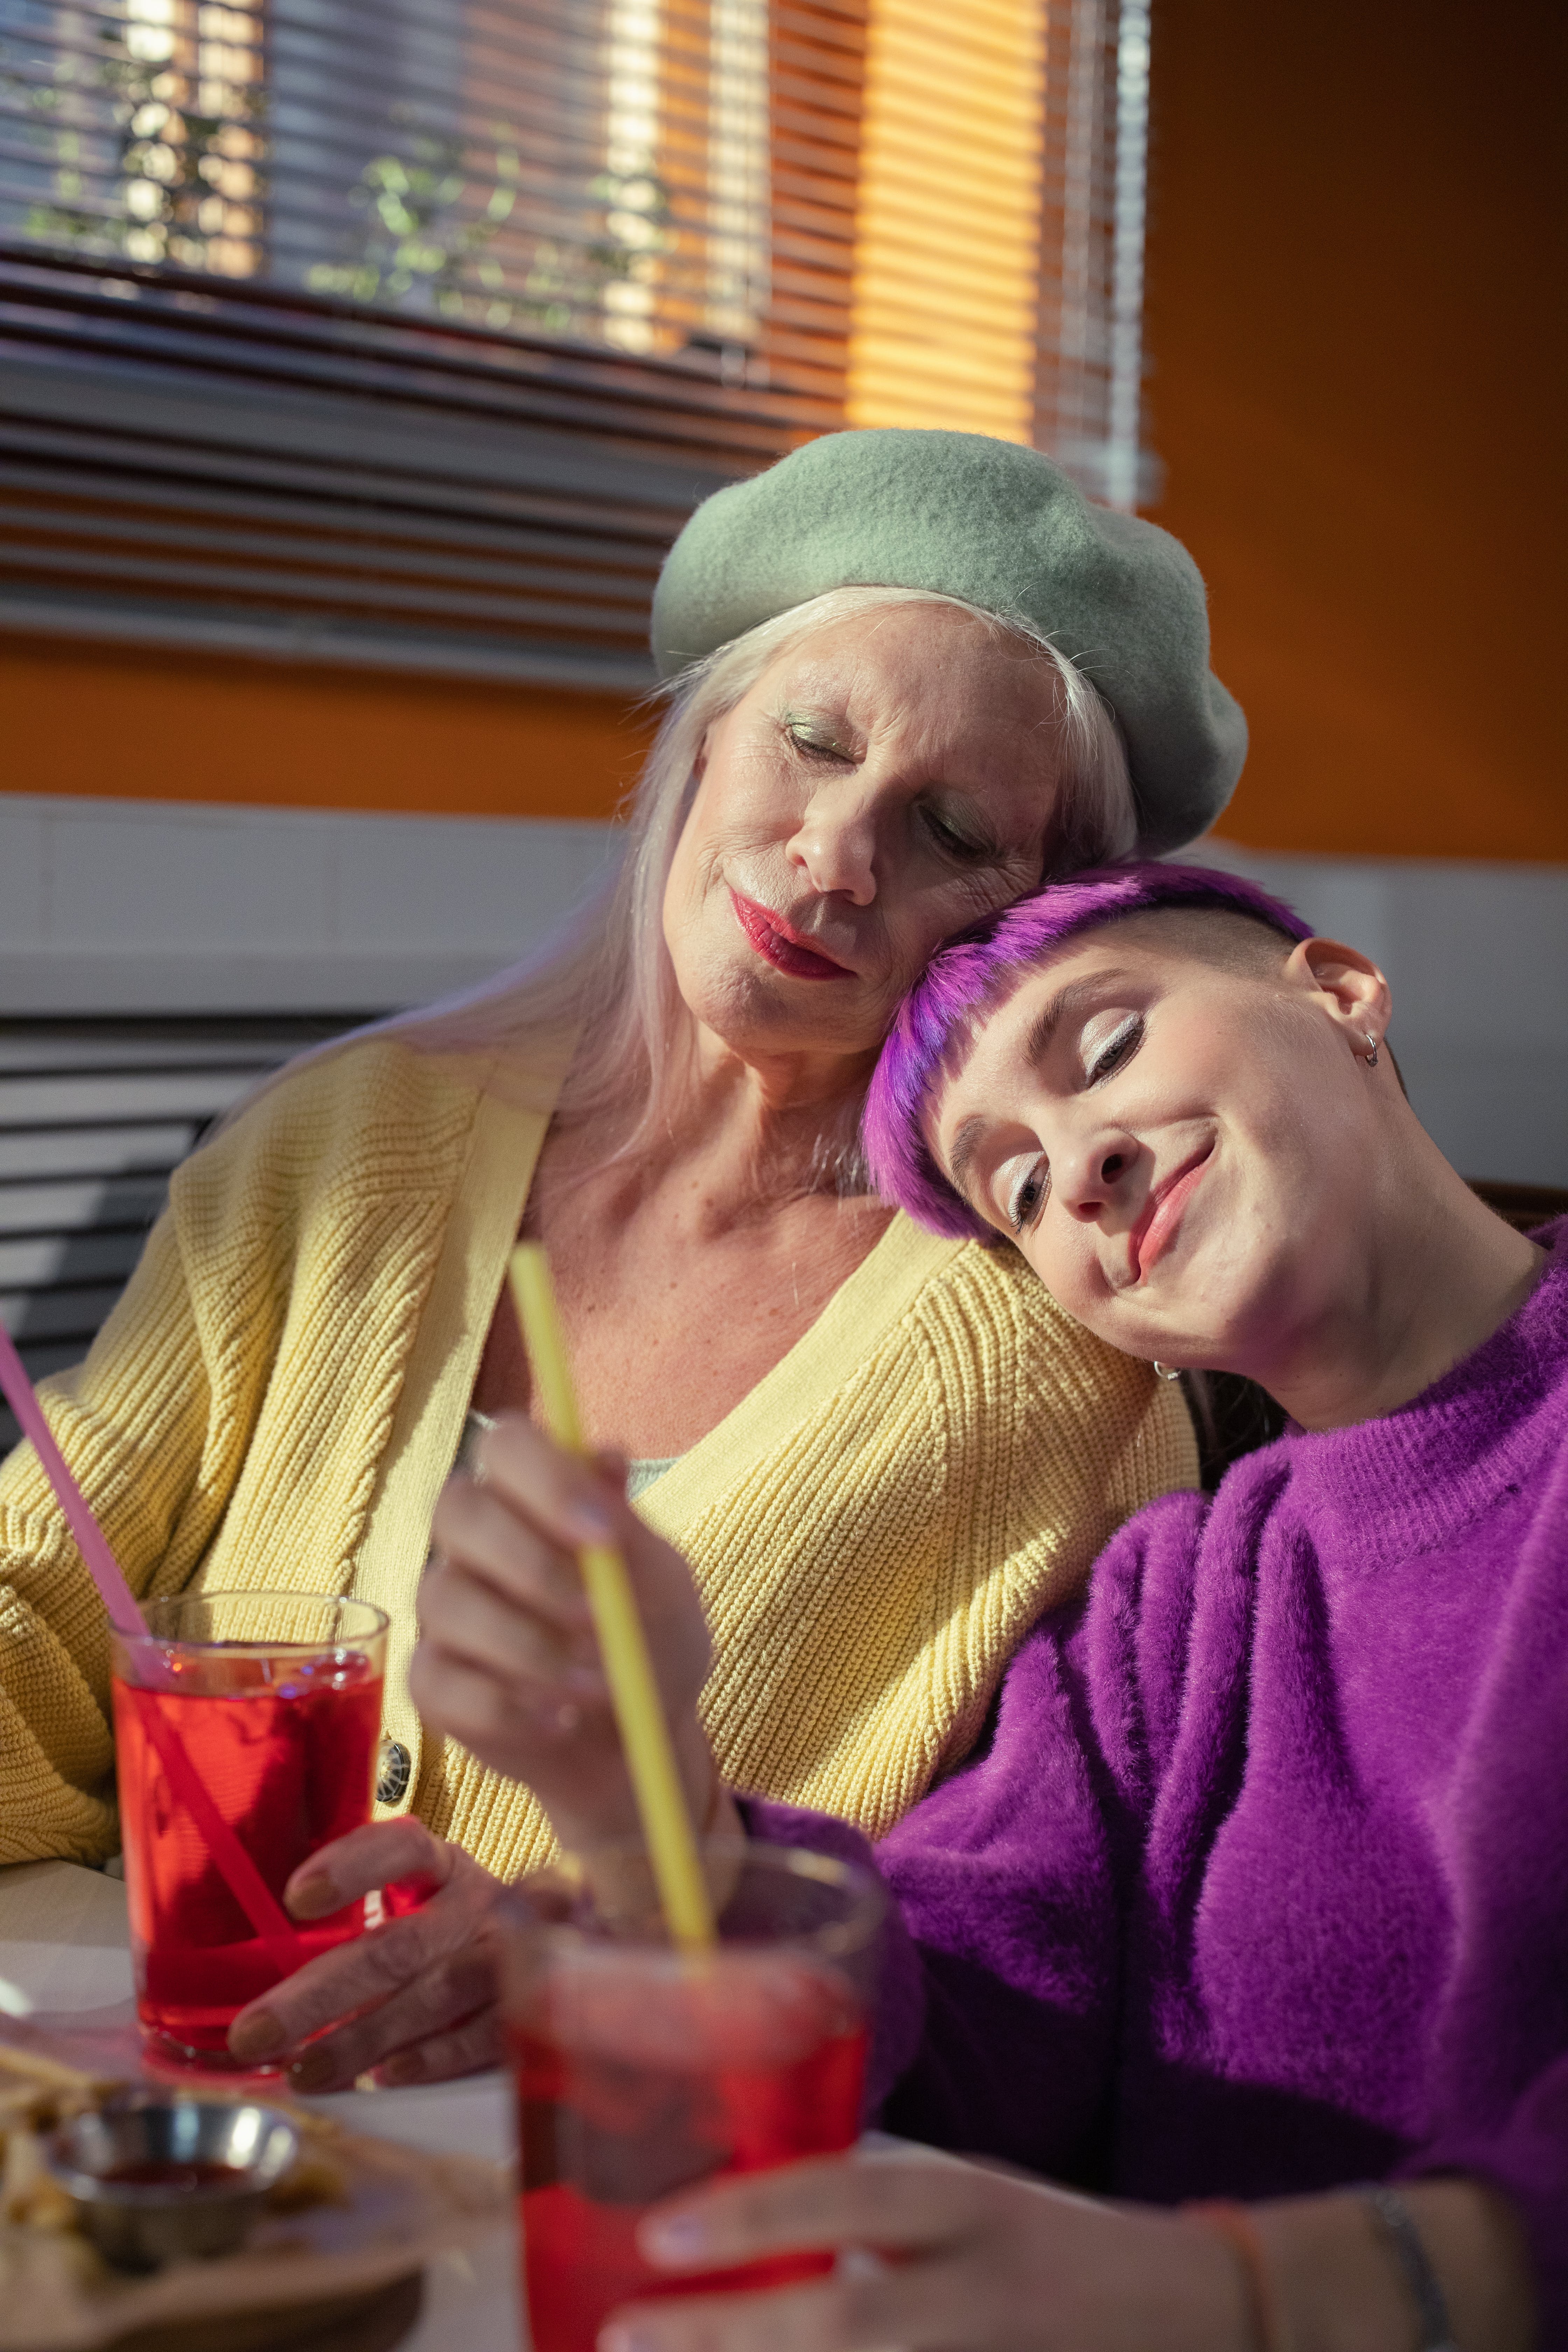 Eine jüngere Frau und eine ältere Frau, die sich bei einem Drink kennenlernen | Quelle: Pexels